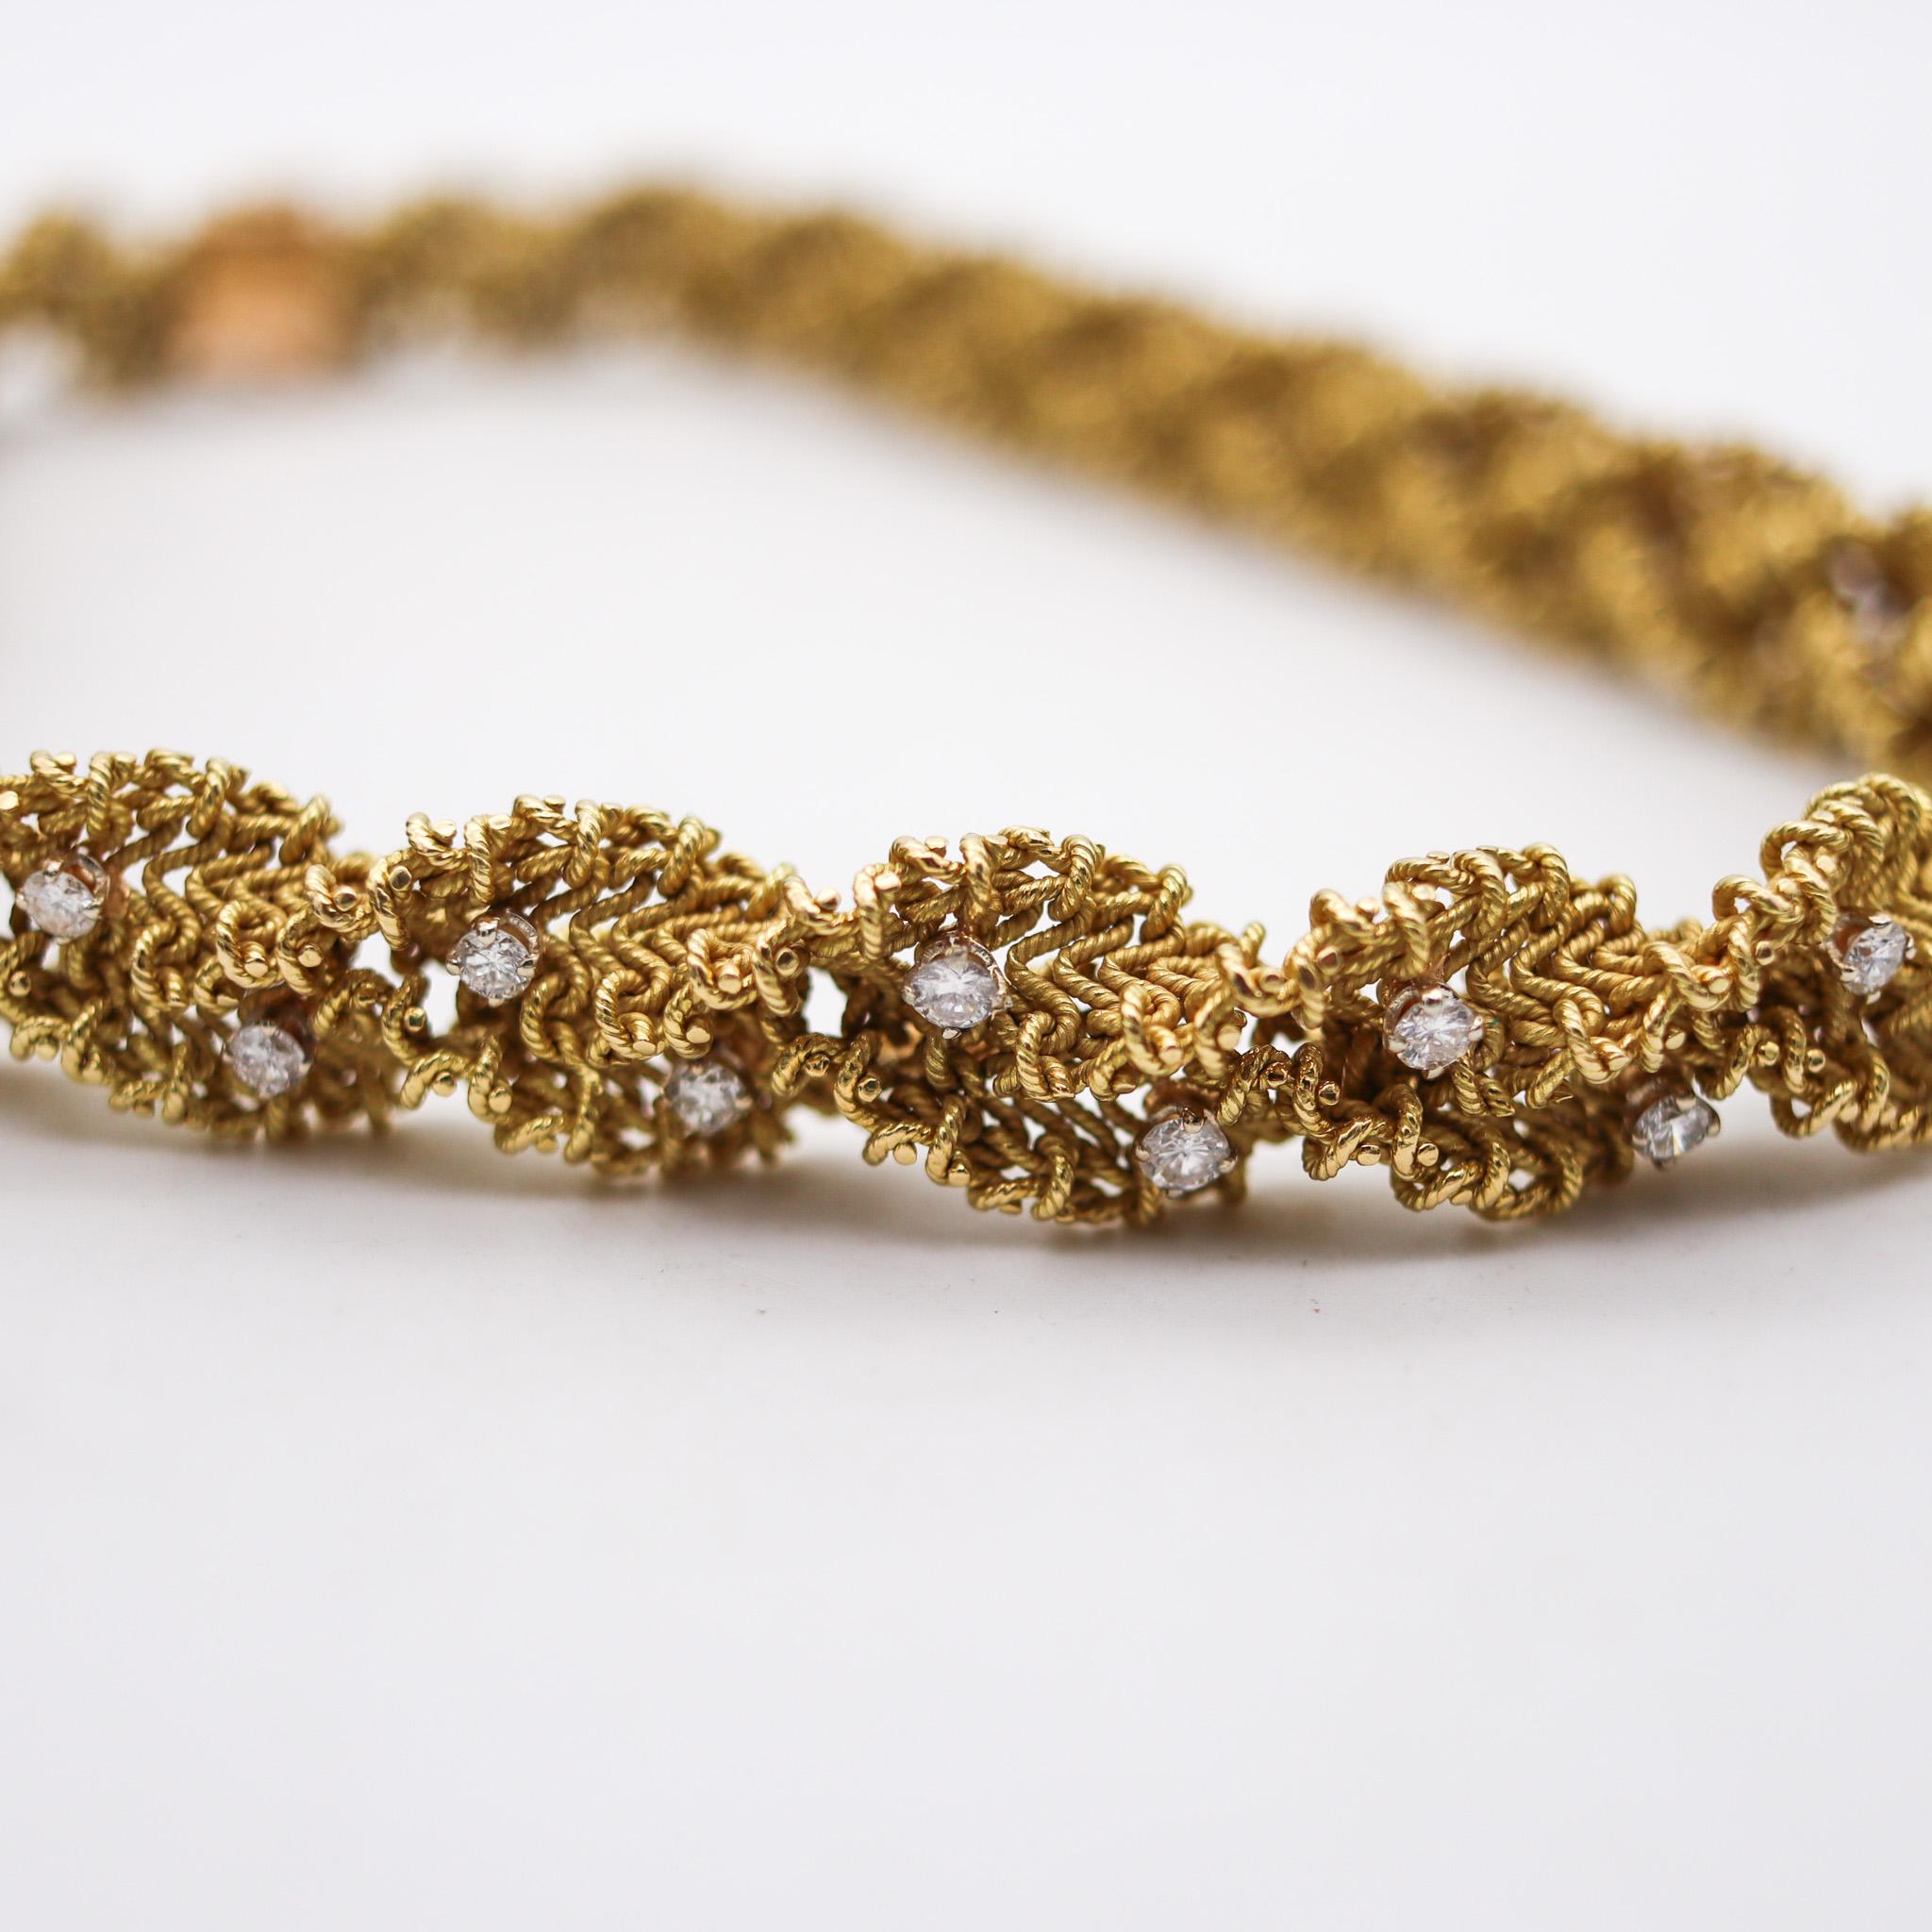 Un collier conçu par Chantecler de Capri.

Fabuleux collier torsadé, créé sur l'île de Capri en Italie par la maison de joaillerie Chantecler au milieu du siècle dernier, dans les années 1960. Ce rare et magnifique collier vintage a été conçu avec